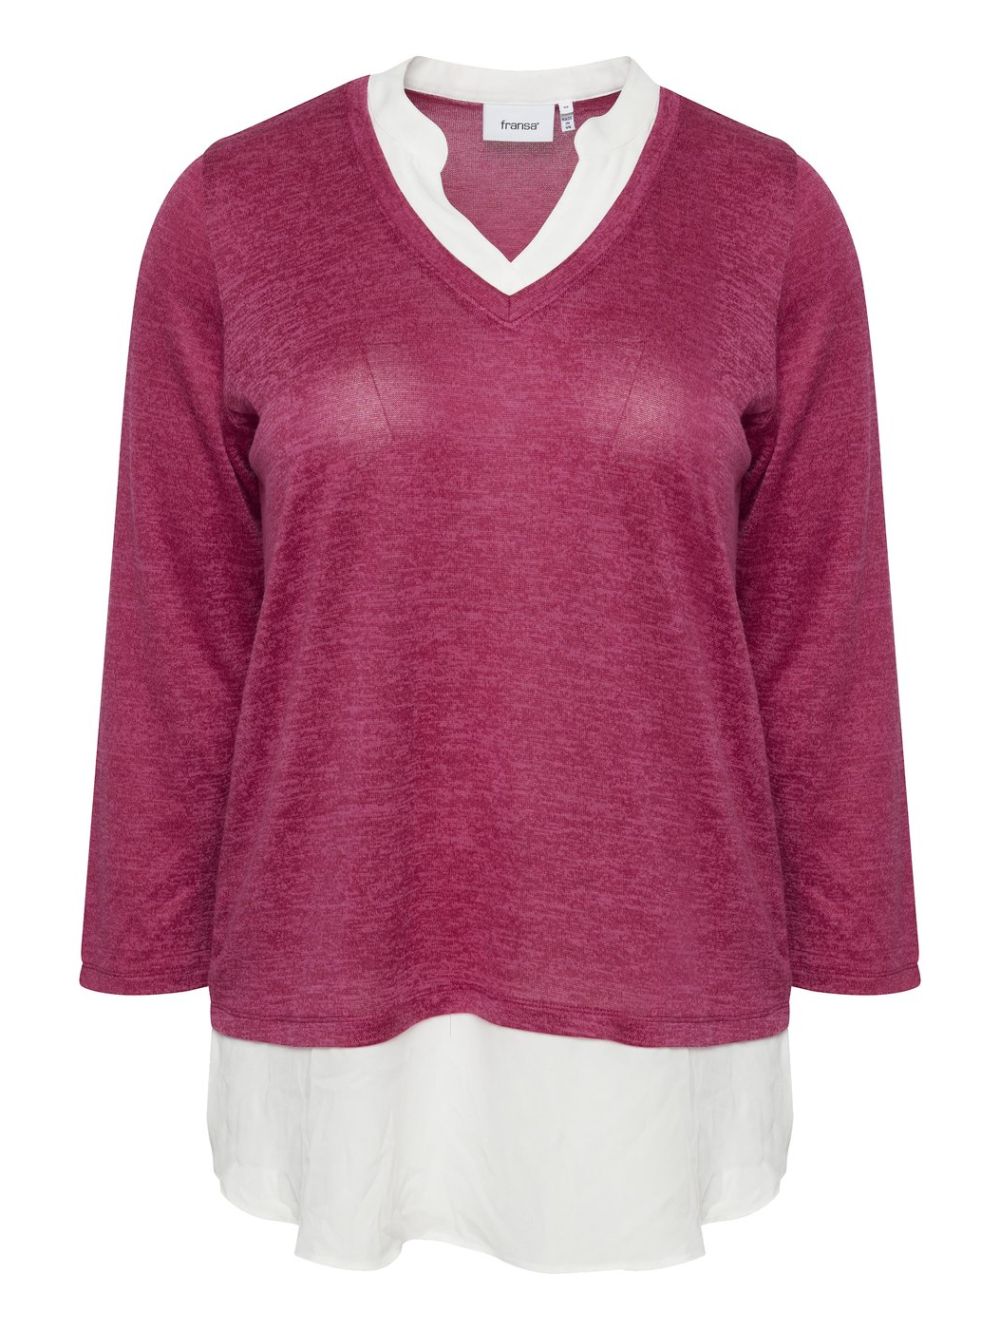 Women\'s blouse 20611407-1823361 Melange red Very FRANSA knit Berry V-neck